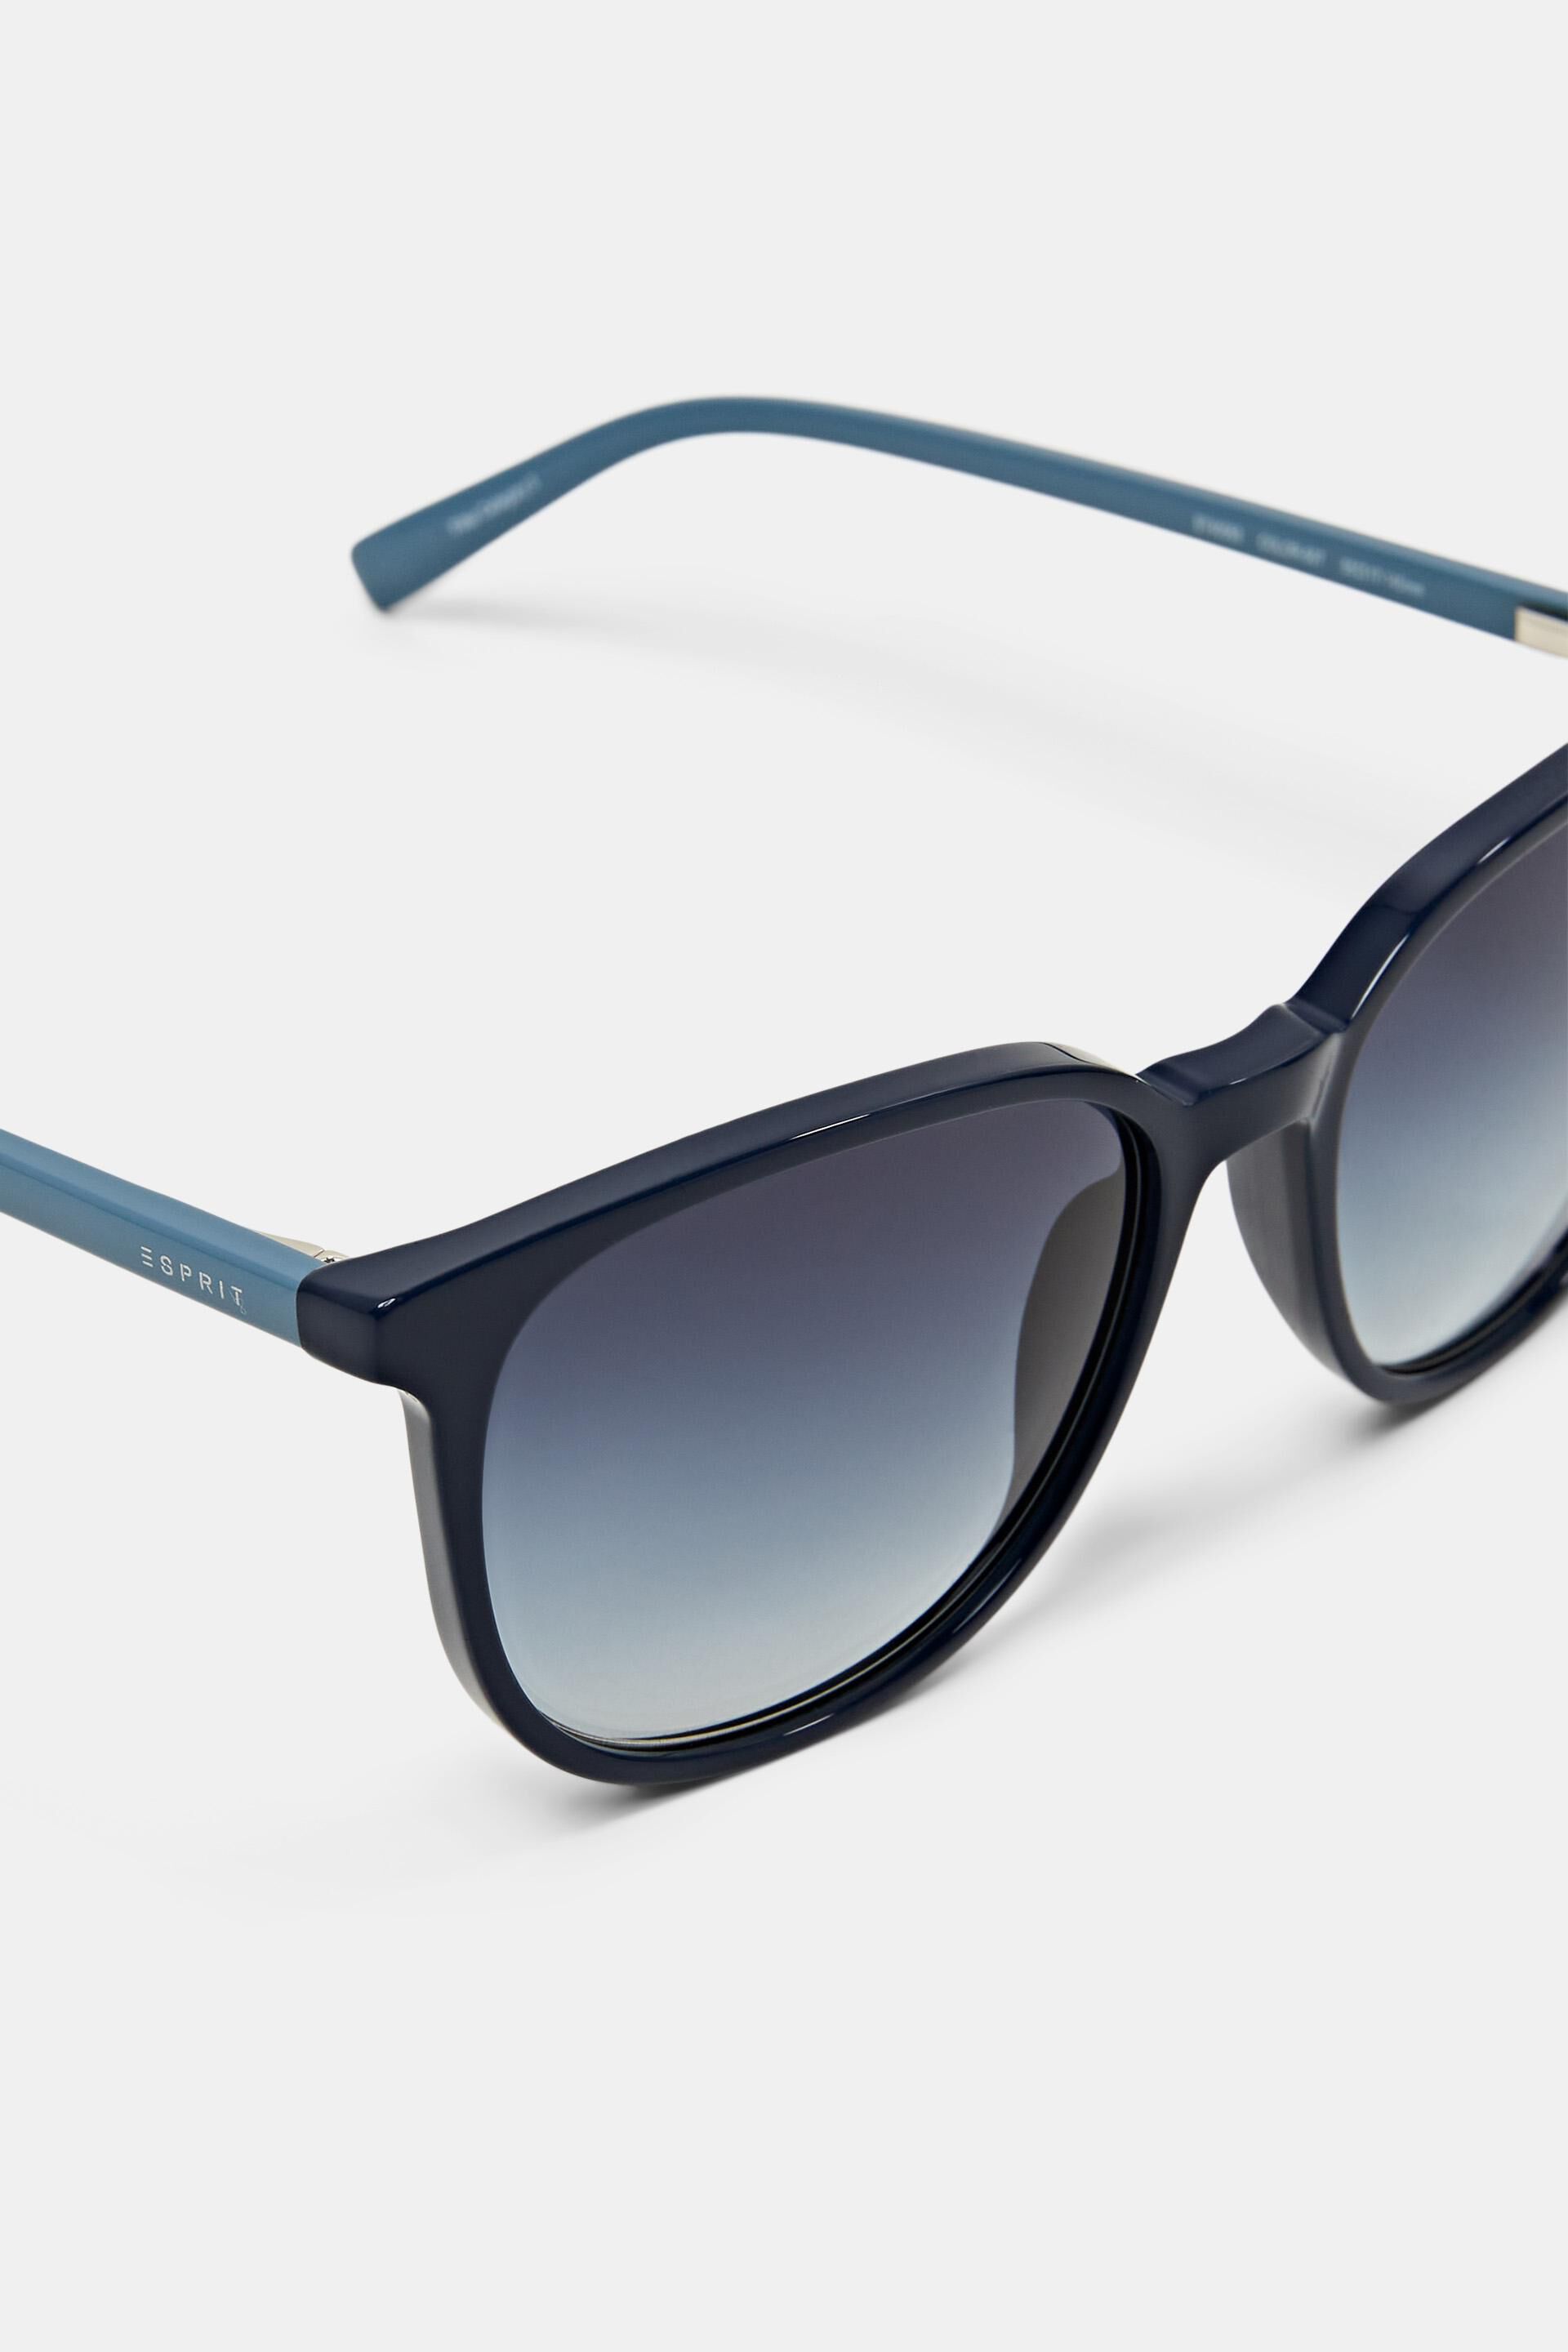 Esprit Online Store Colour frame sunglasses